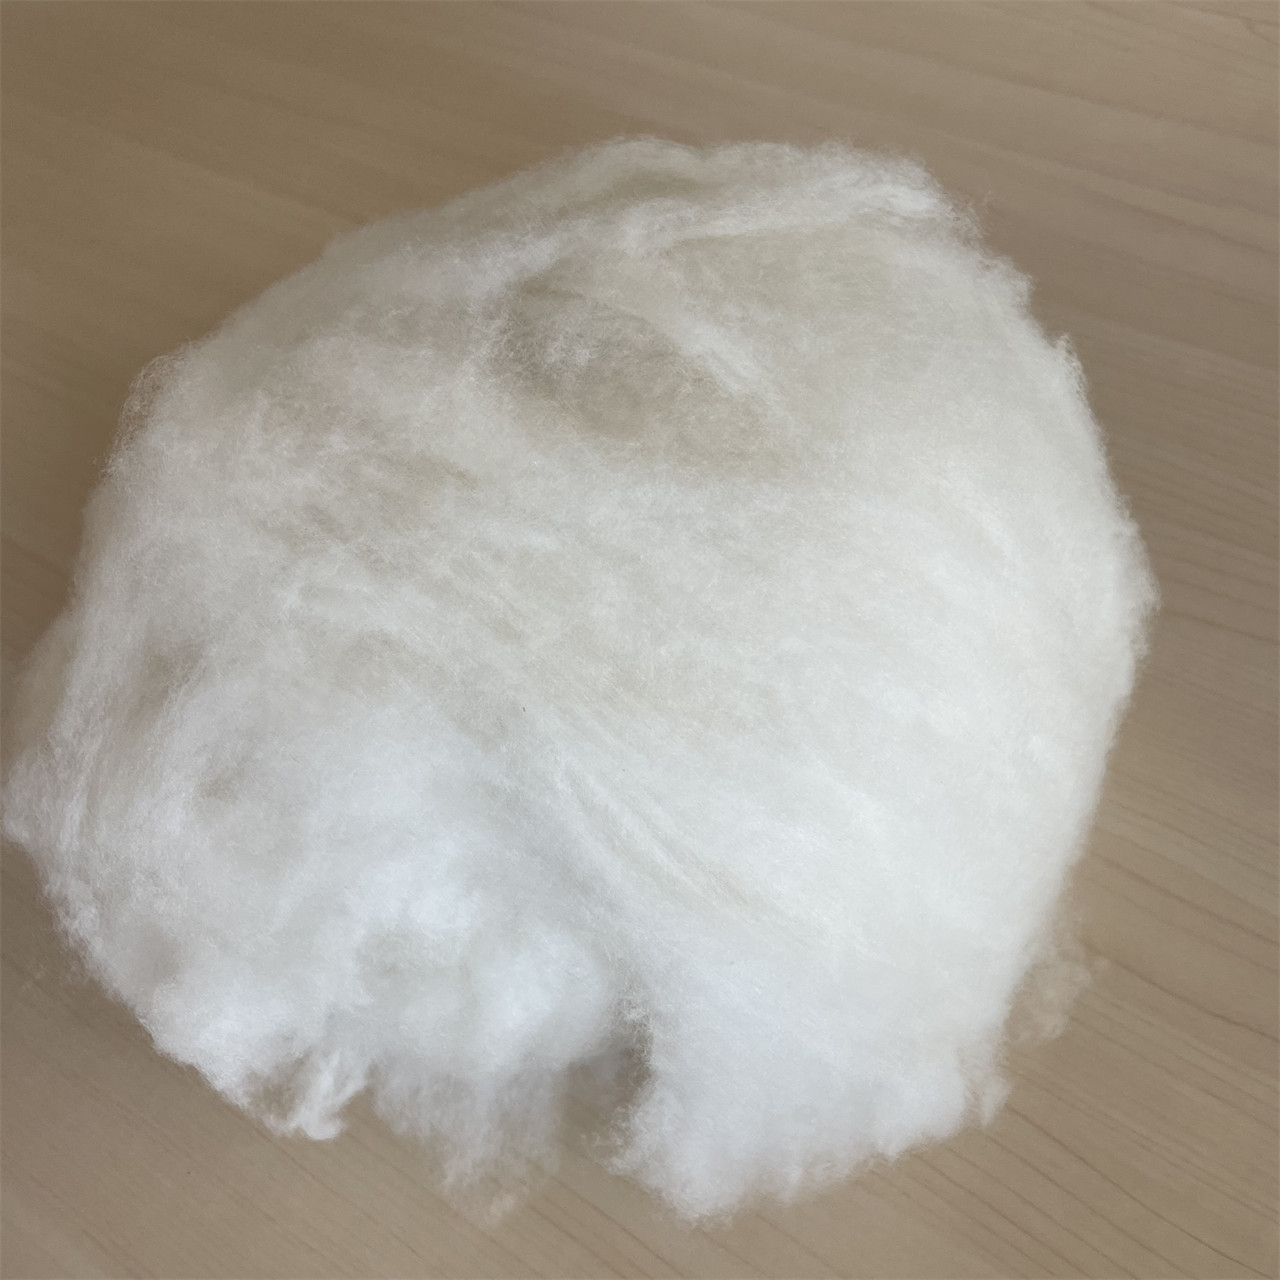 dehaired pure cashmere fibre white